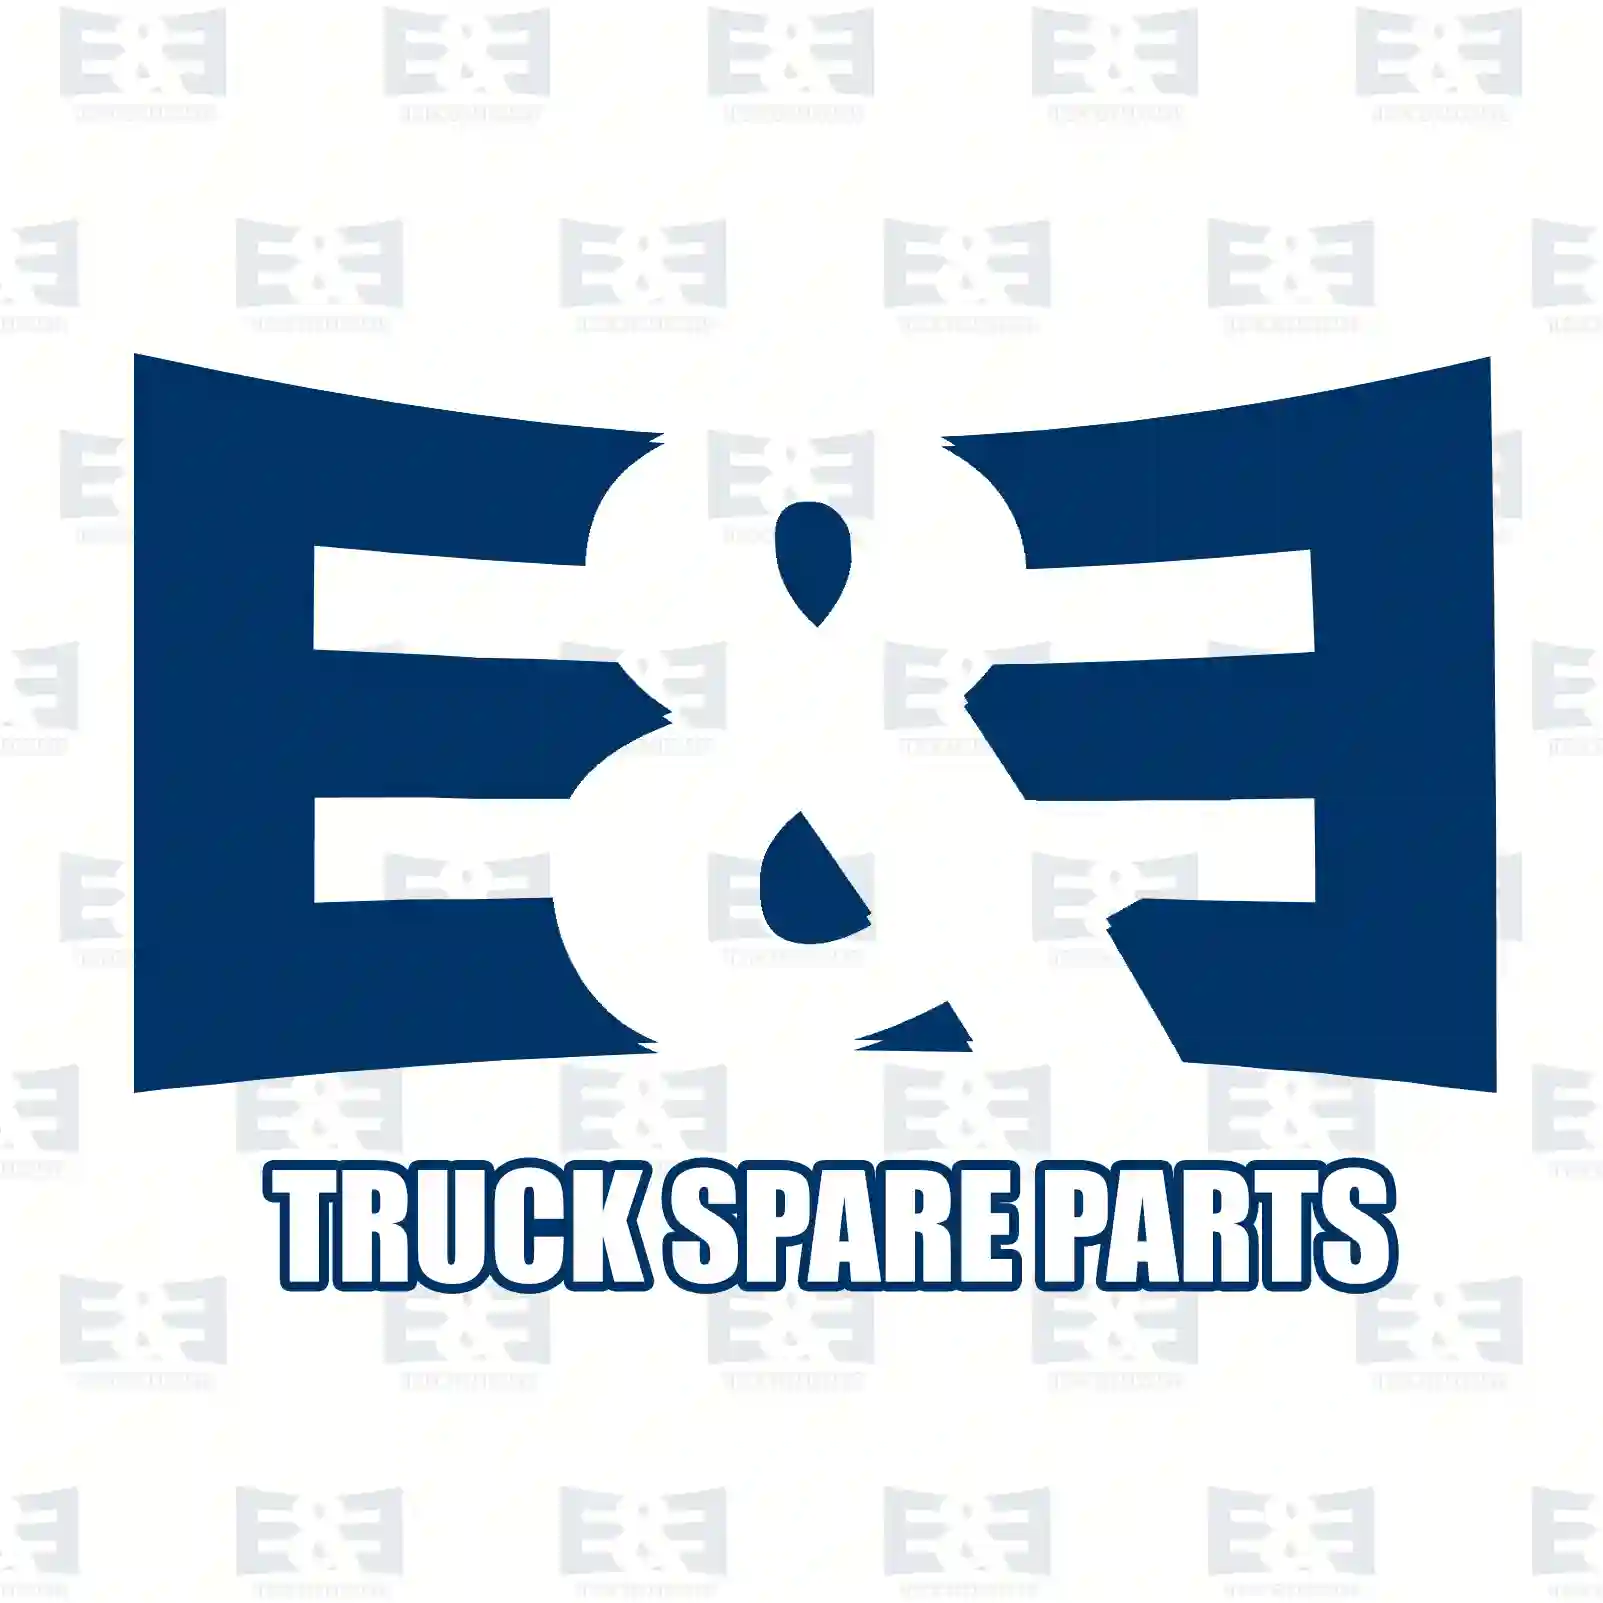 Cabin shock absorber, 2E2275641, 5010277261 ||  2E2275641 E&E Truck Spare Parts | Truck Spare Parts, Auotomotive Spare Parts Cabin shock absorber, 2E2275641, 5010277261 ||  2E2275641 E&E Truck Spare Parts | Truck Spare Parts, Auotomotive Spare Parts